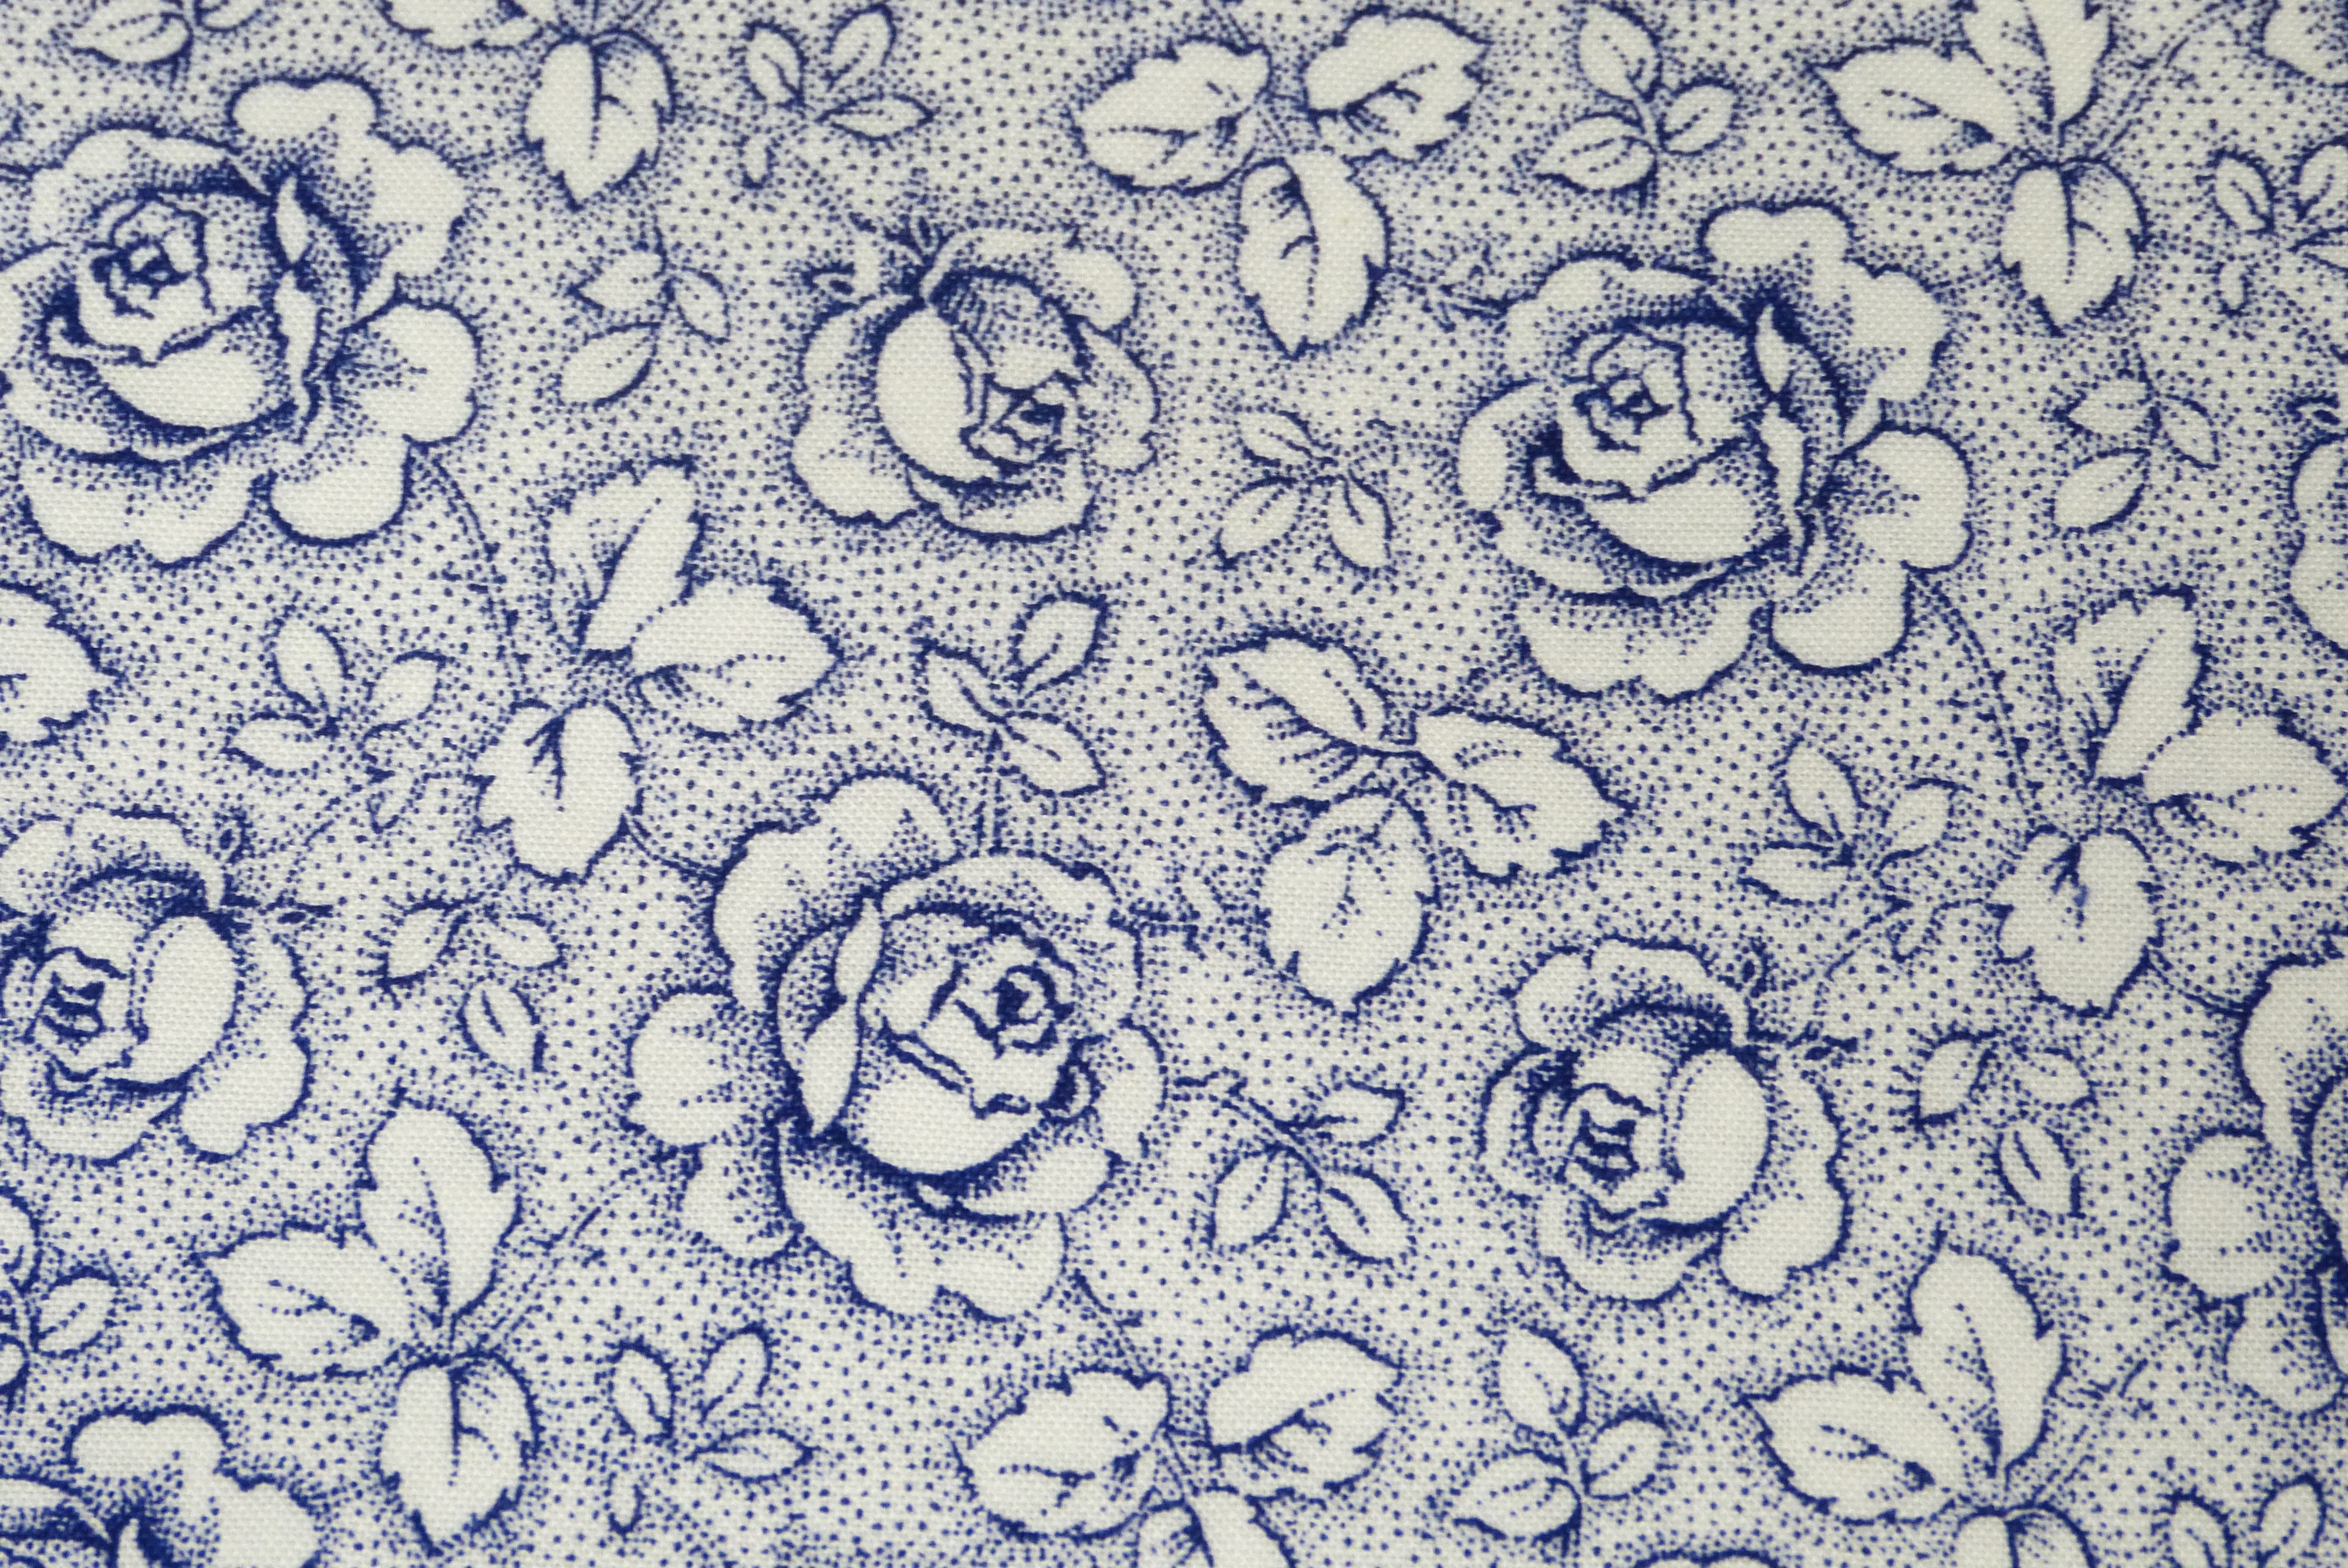 Westfalenstoff blau-weiße Rosen Rosengarten  150 cm breit Druckstoff 